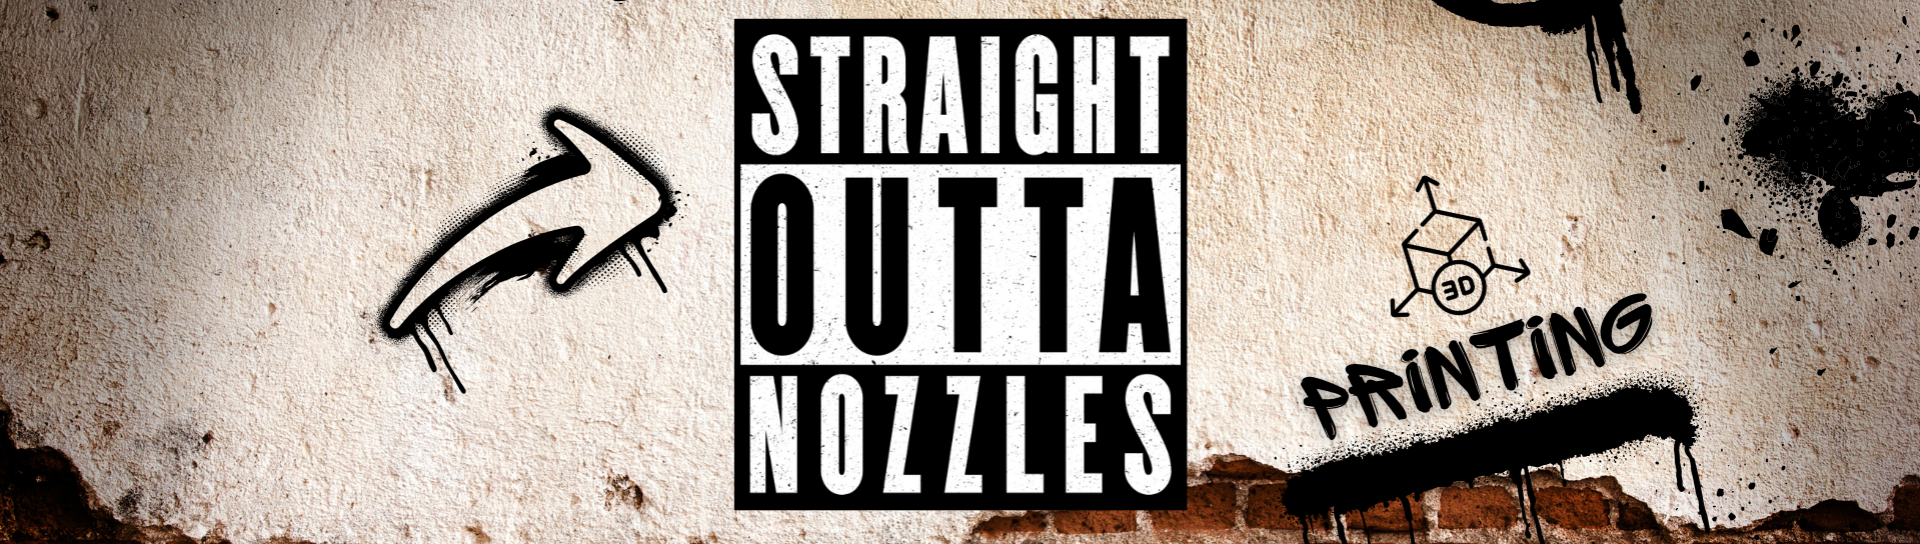 Straight Outta Nozzles